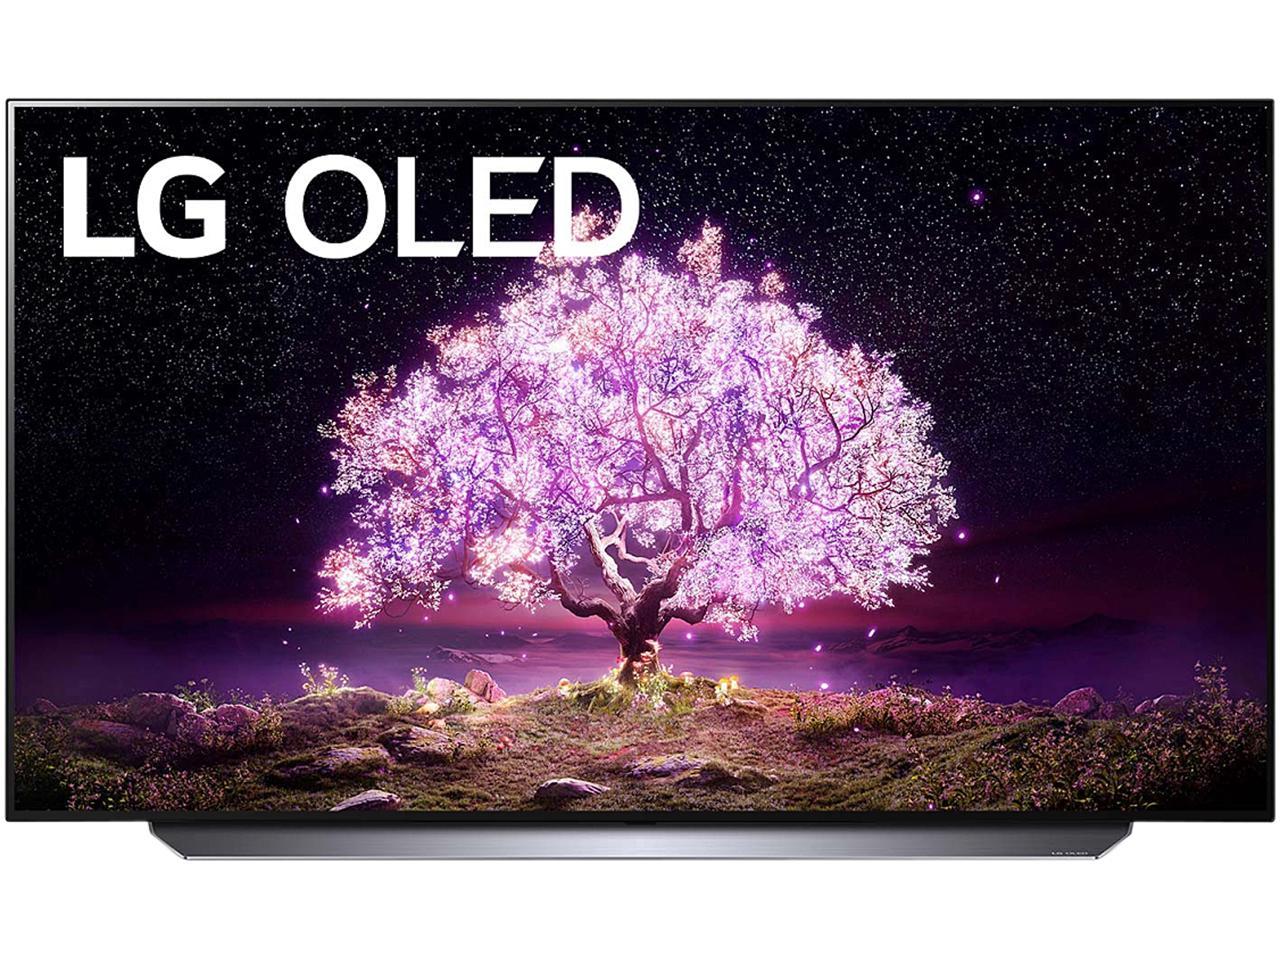 LG OLED48C1PUB 4K Smart OLED TV w/ AI ThinQ (2021) @newegg $1097